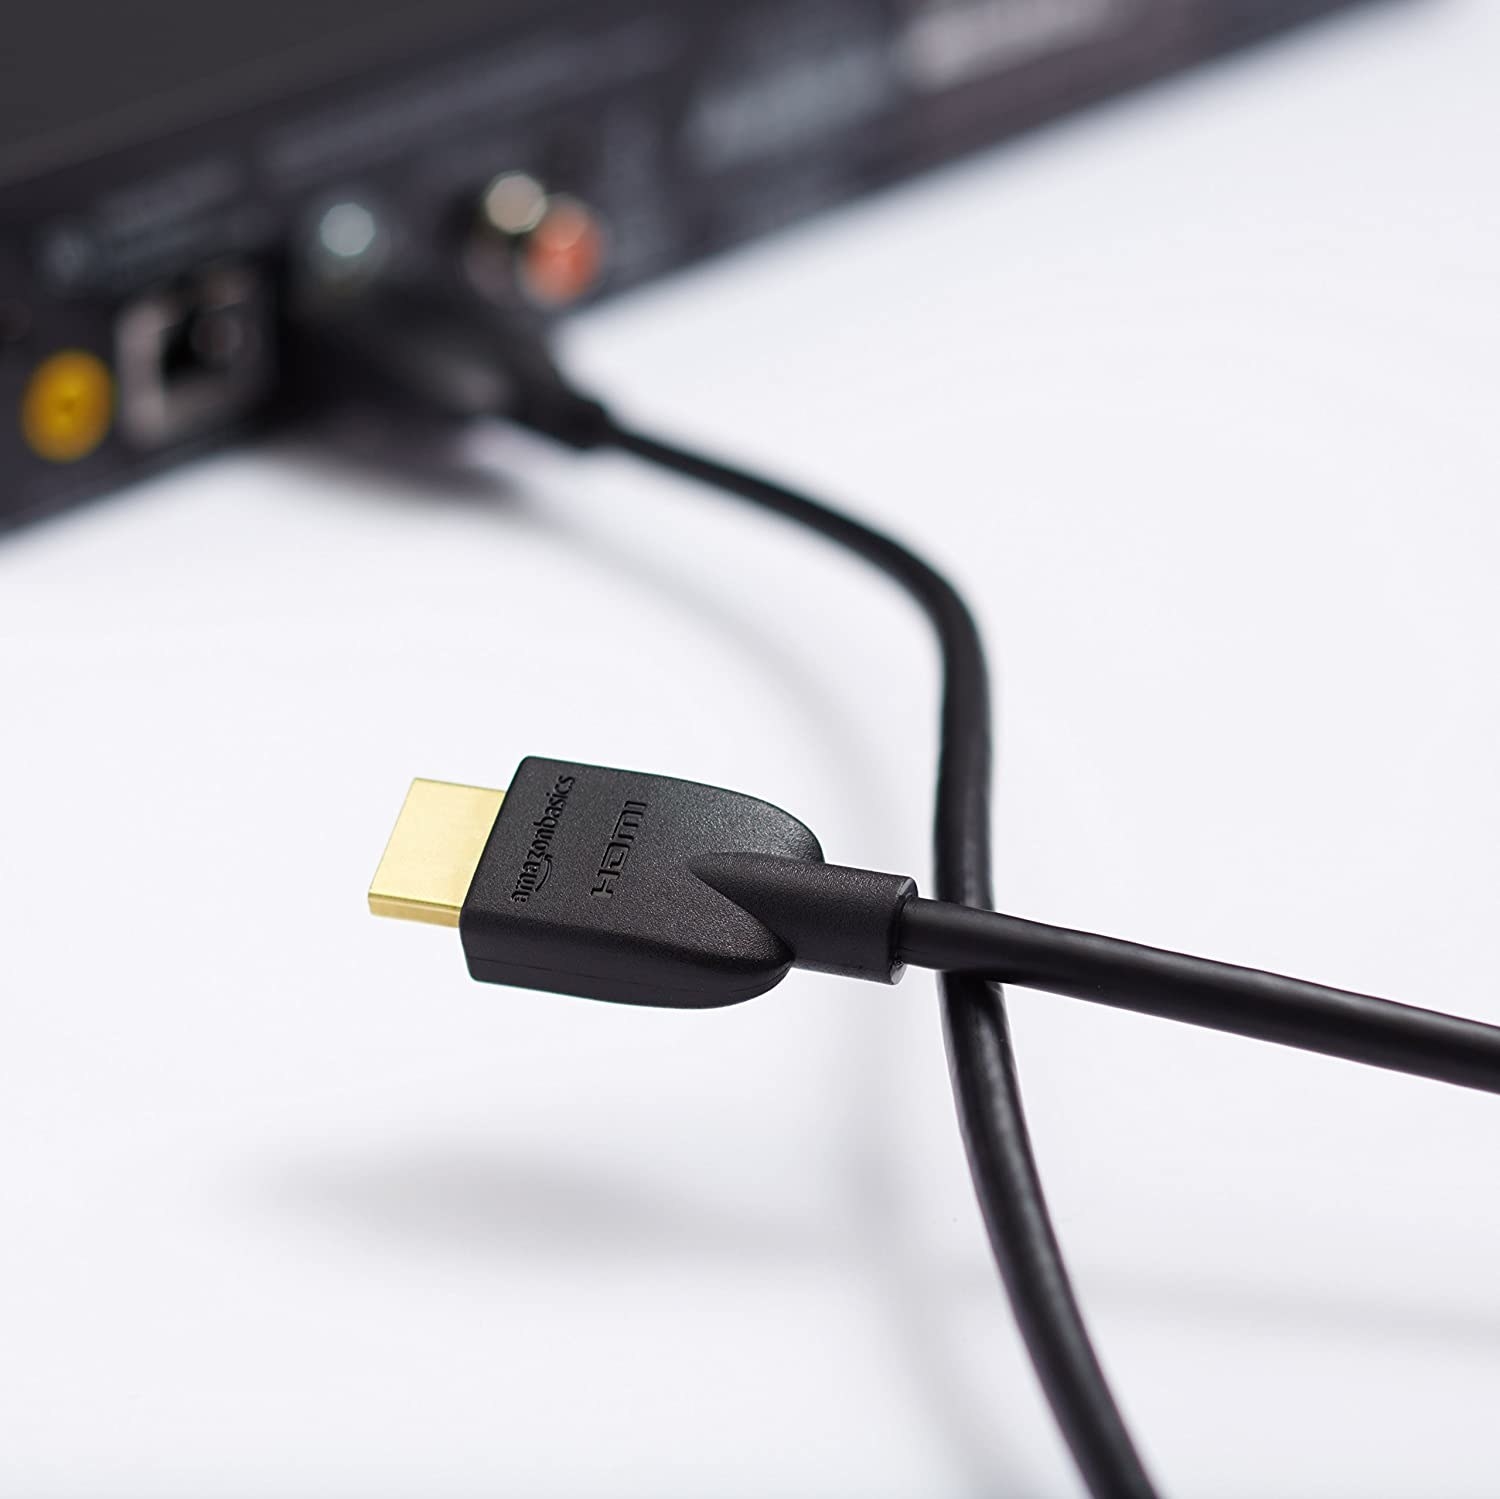 a close up of the HDMI plug